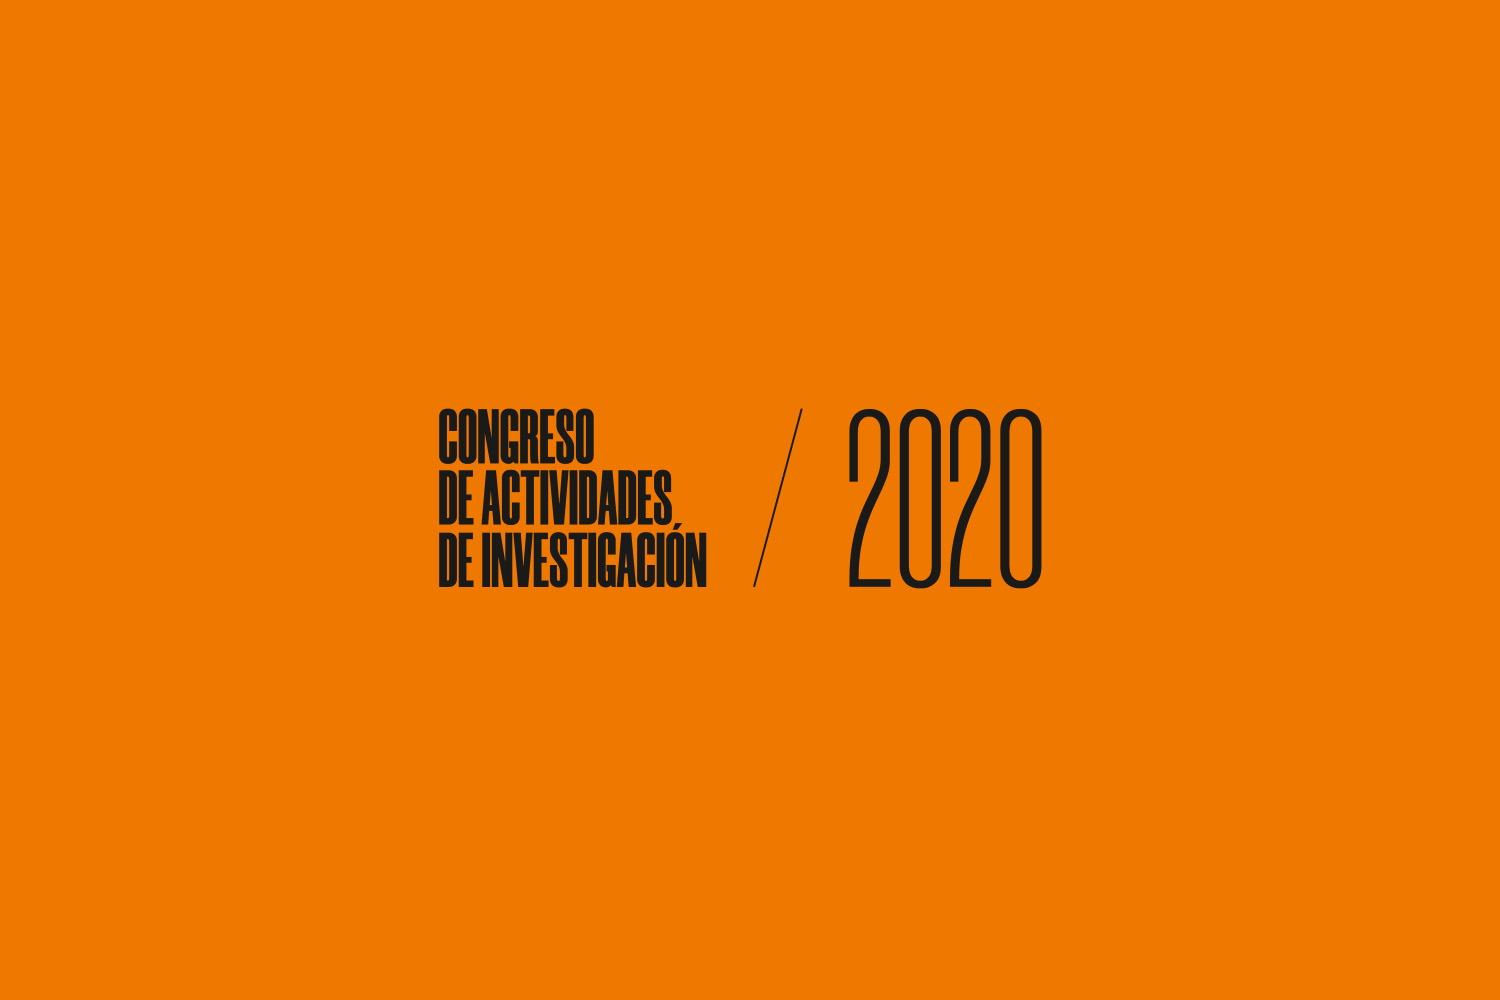 Congreso de actividades de investigación 2020